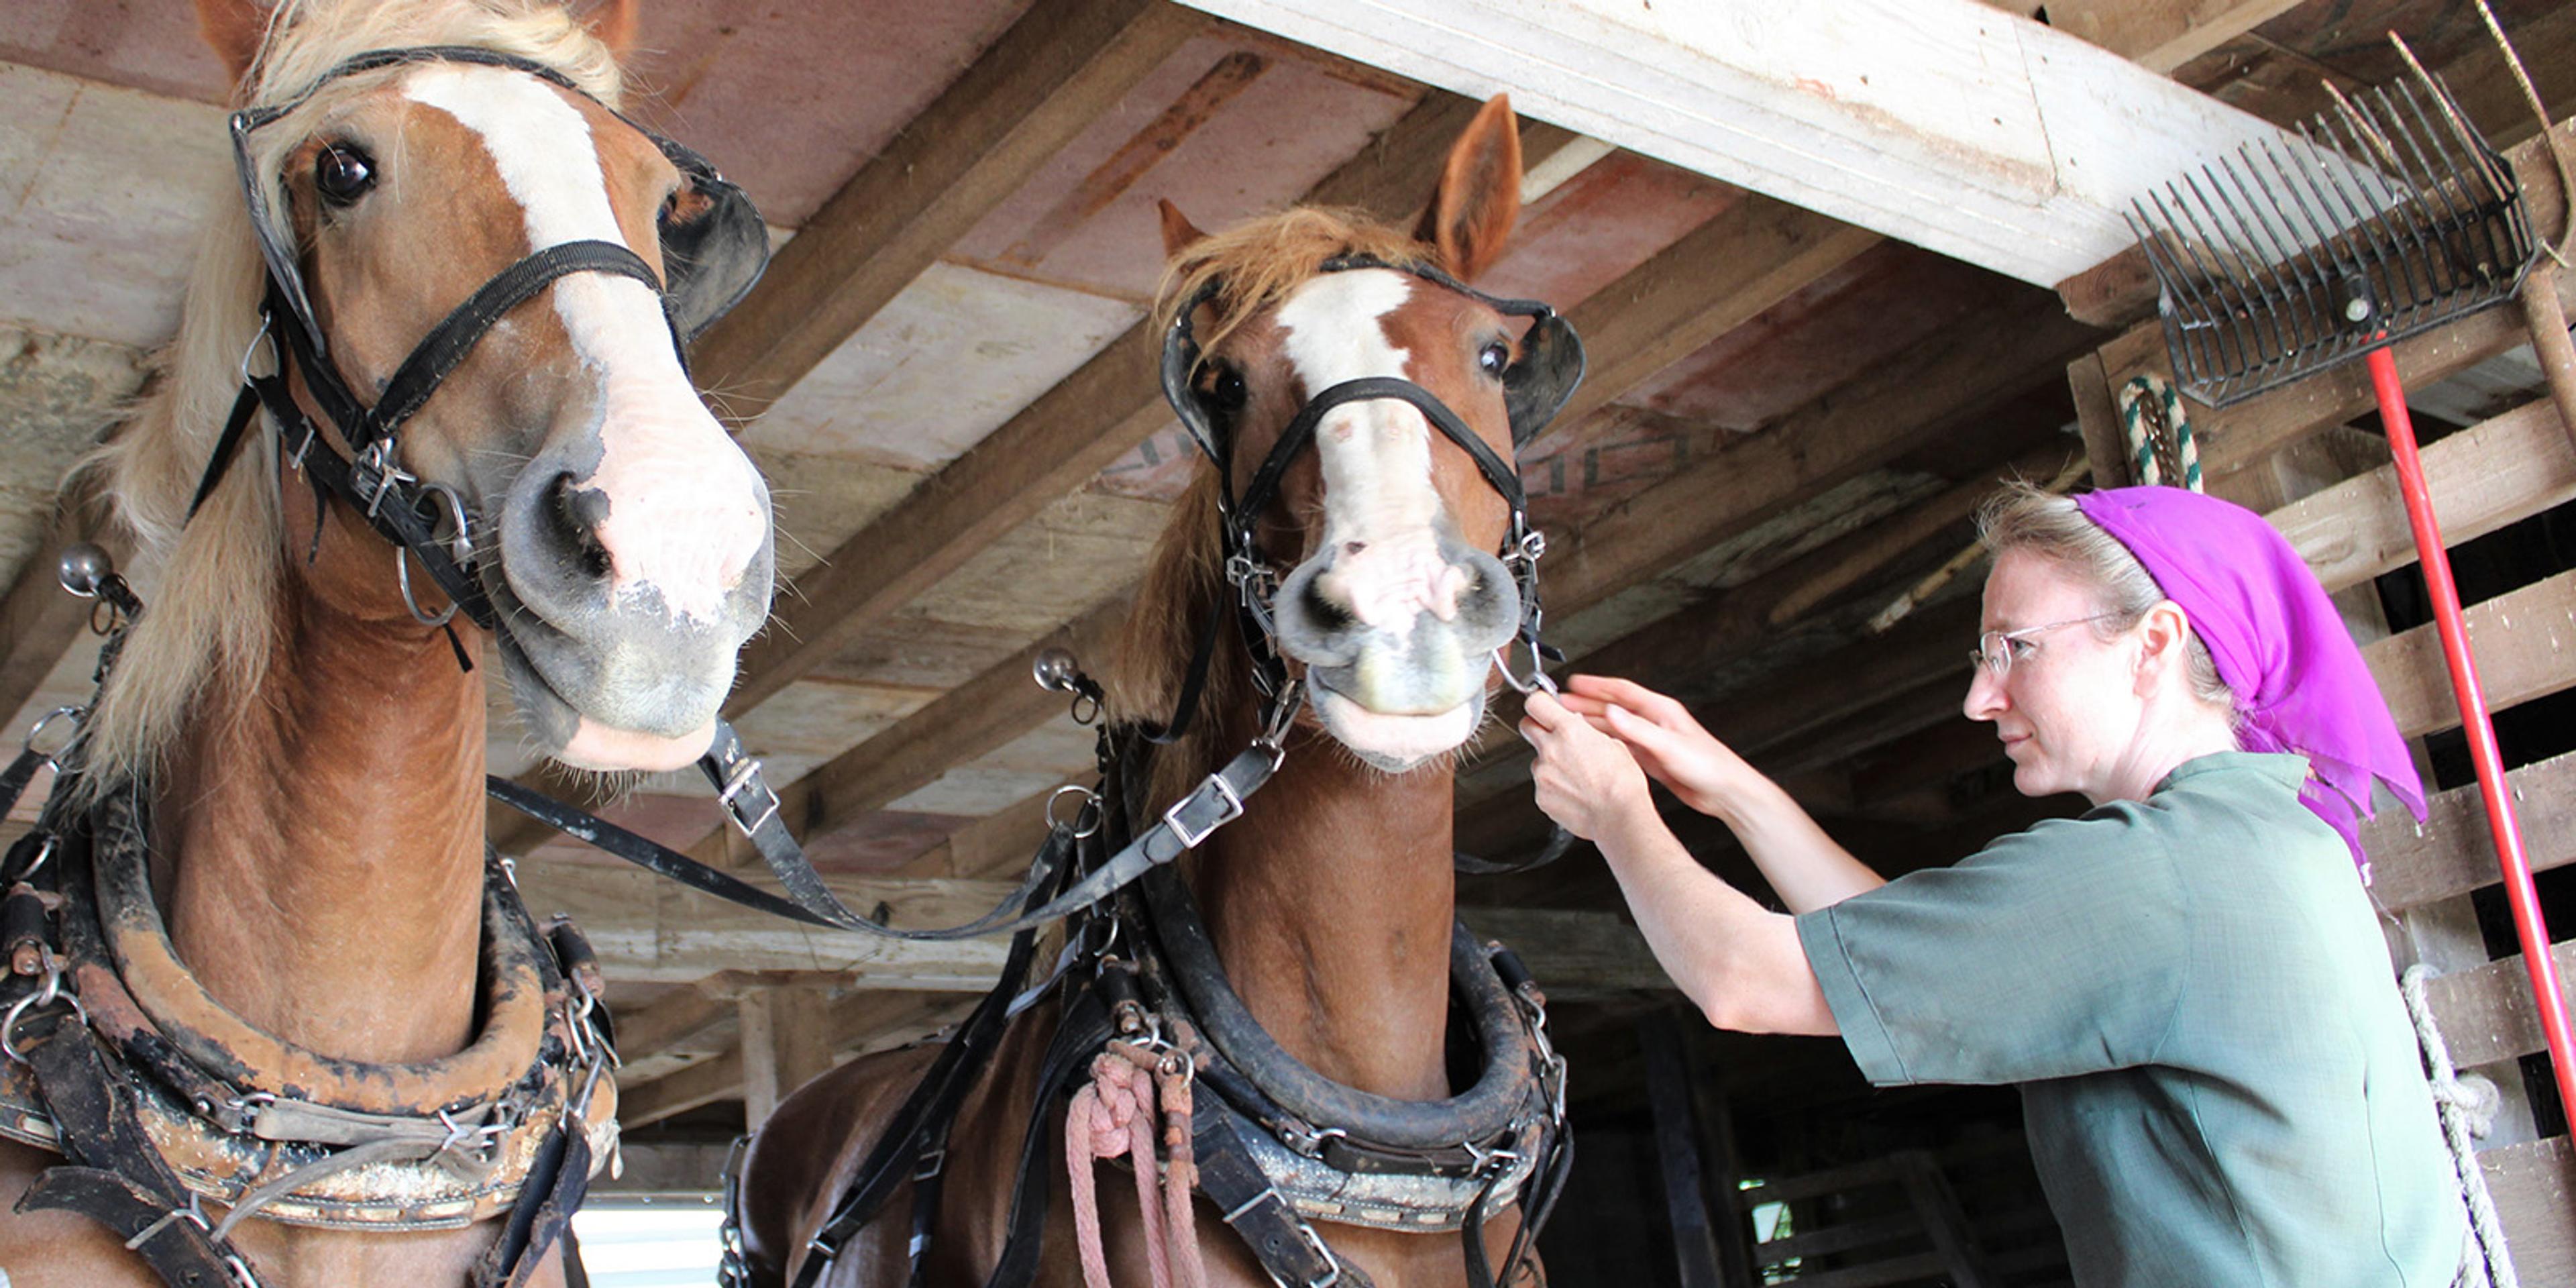 An Amish woman preps horses for raking hay.